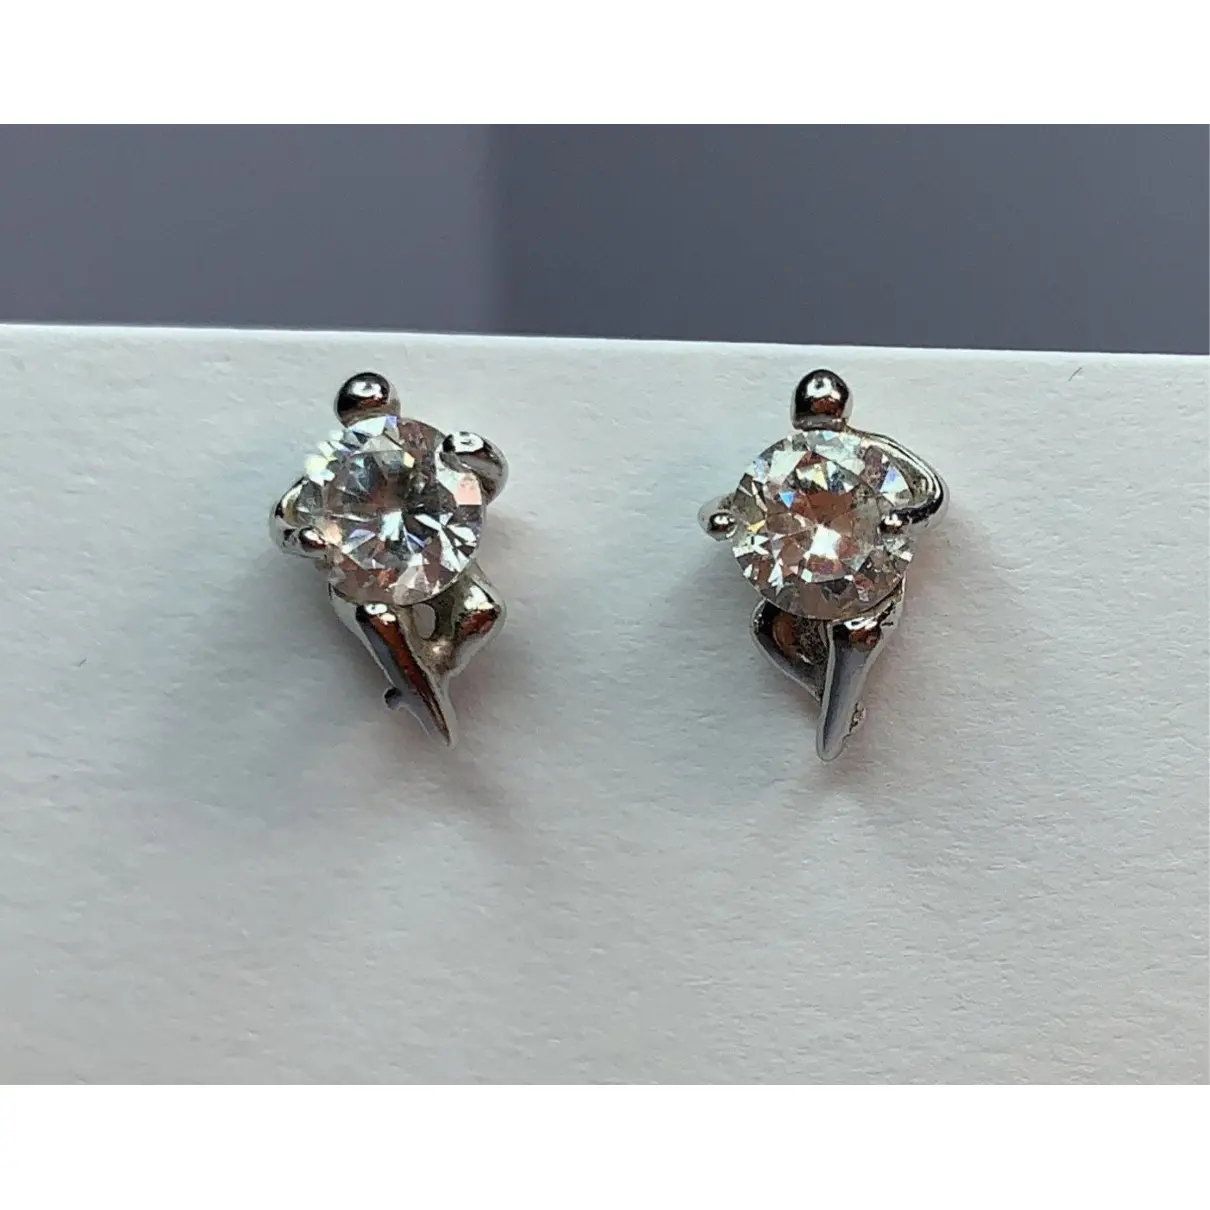 Buy Charles Jourdan Silver earrings online